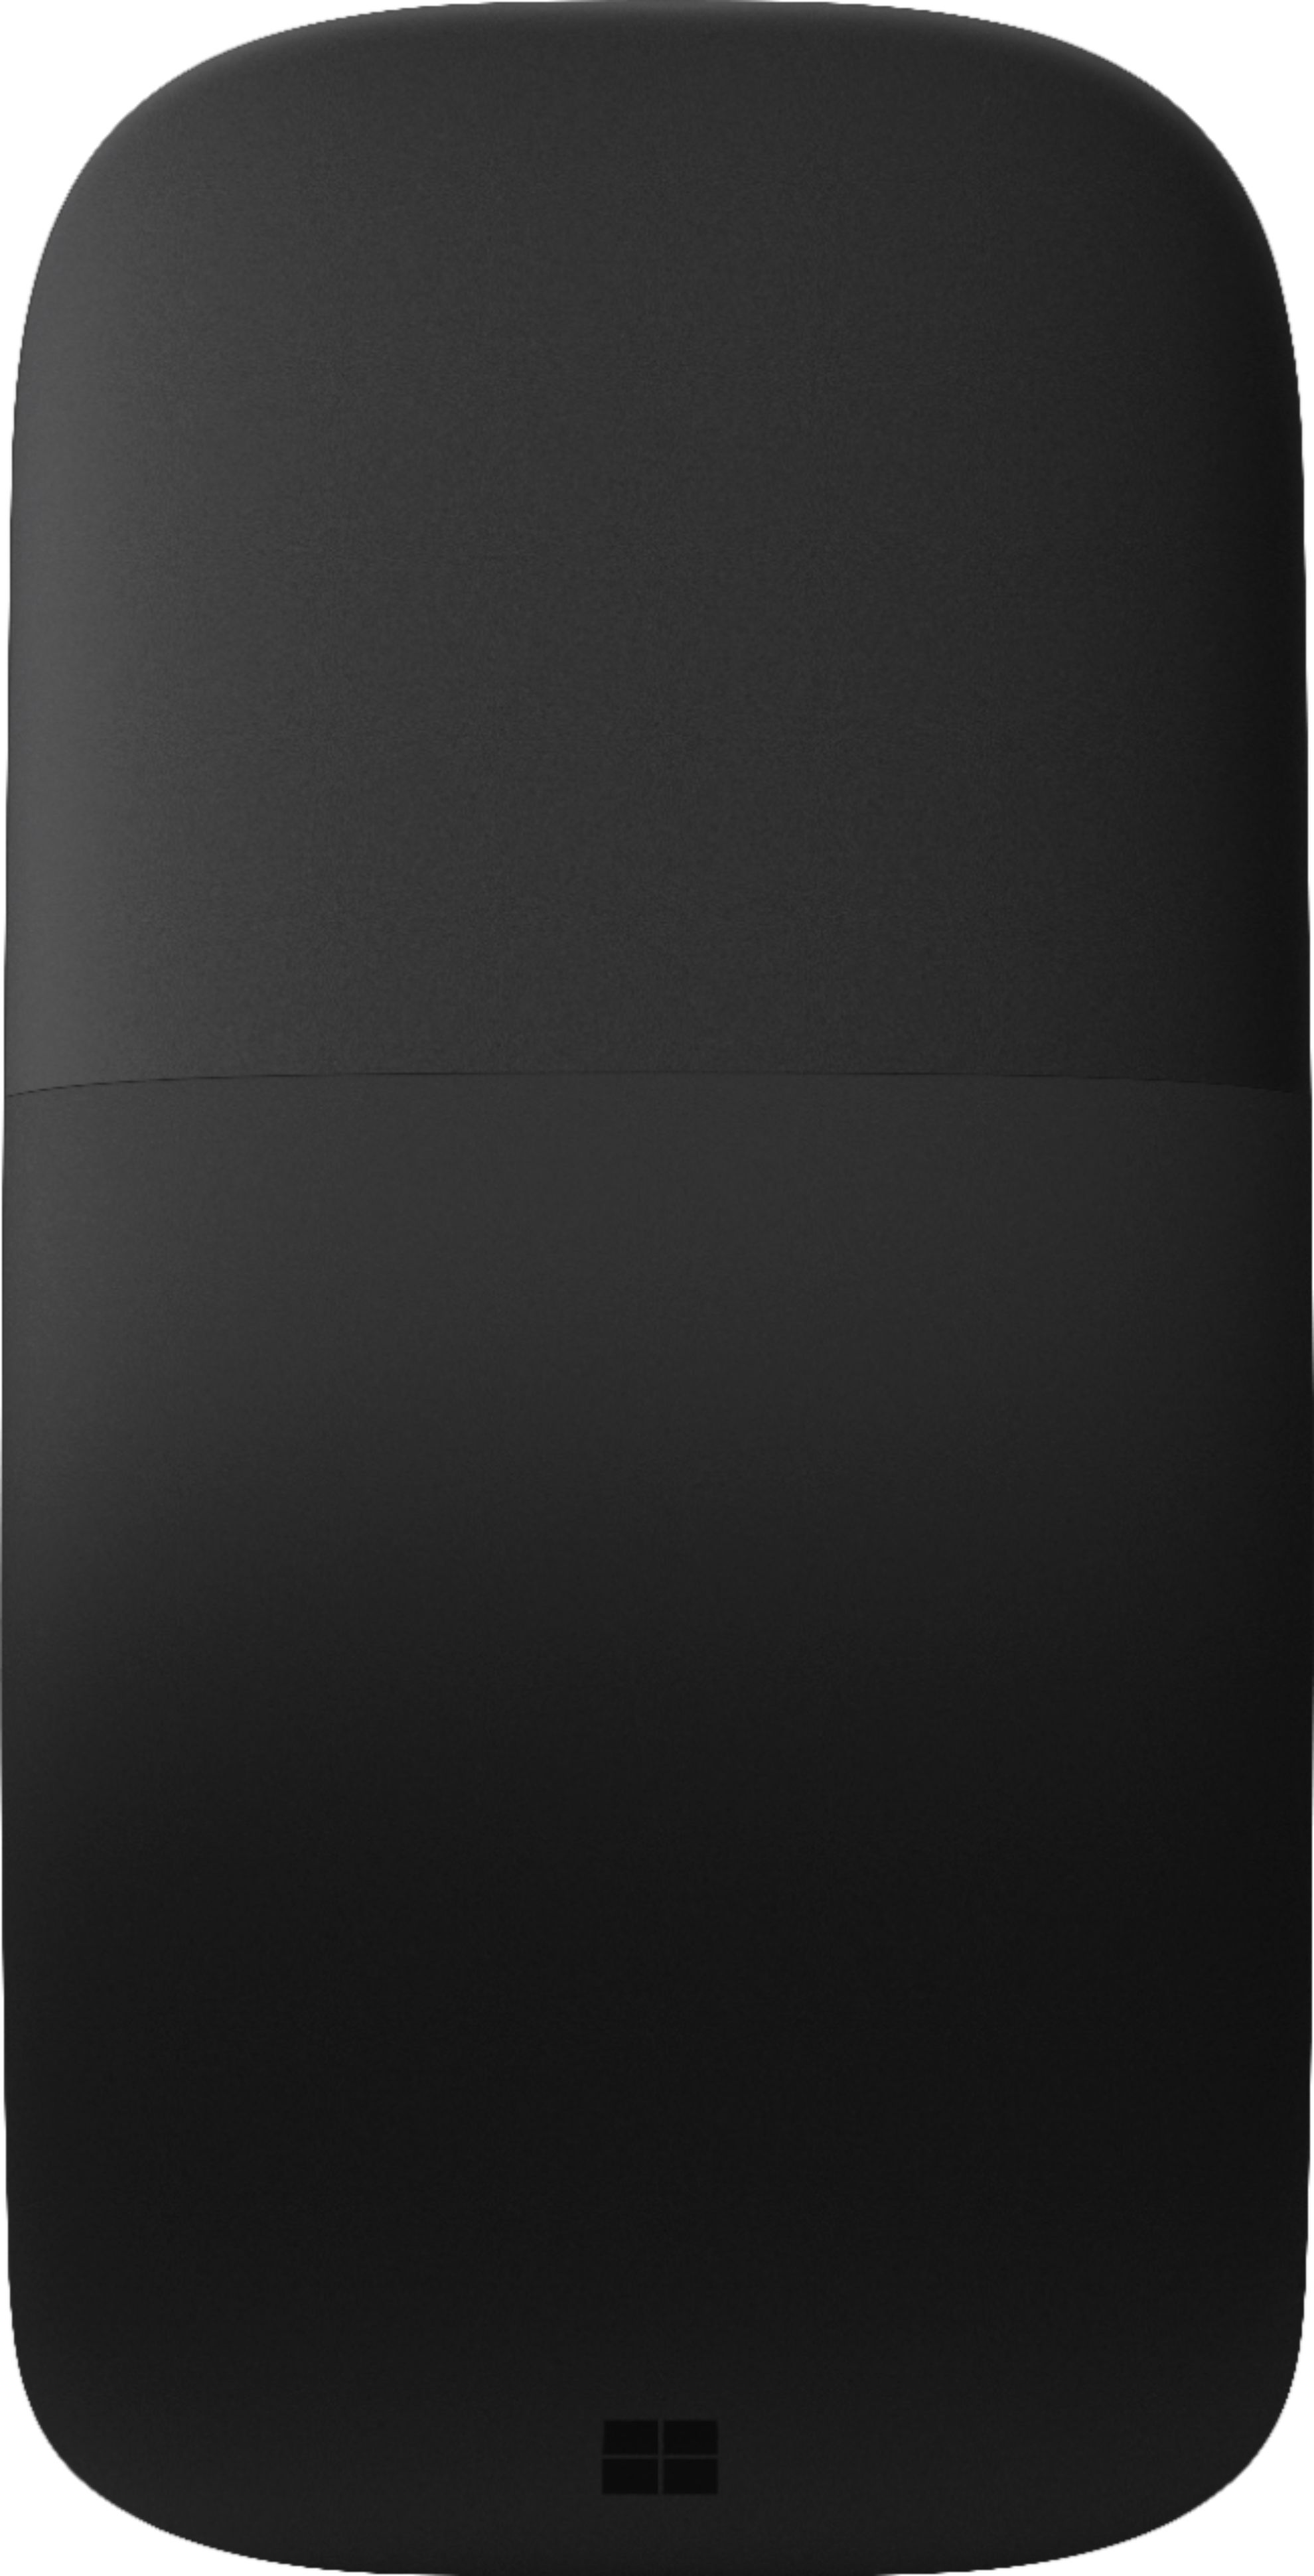 Souris Microsoft Arc Edition Surface Noire